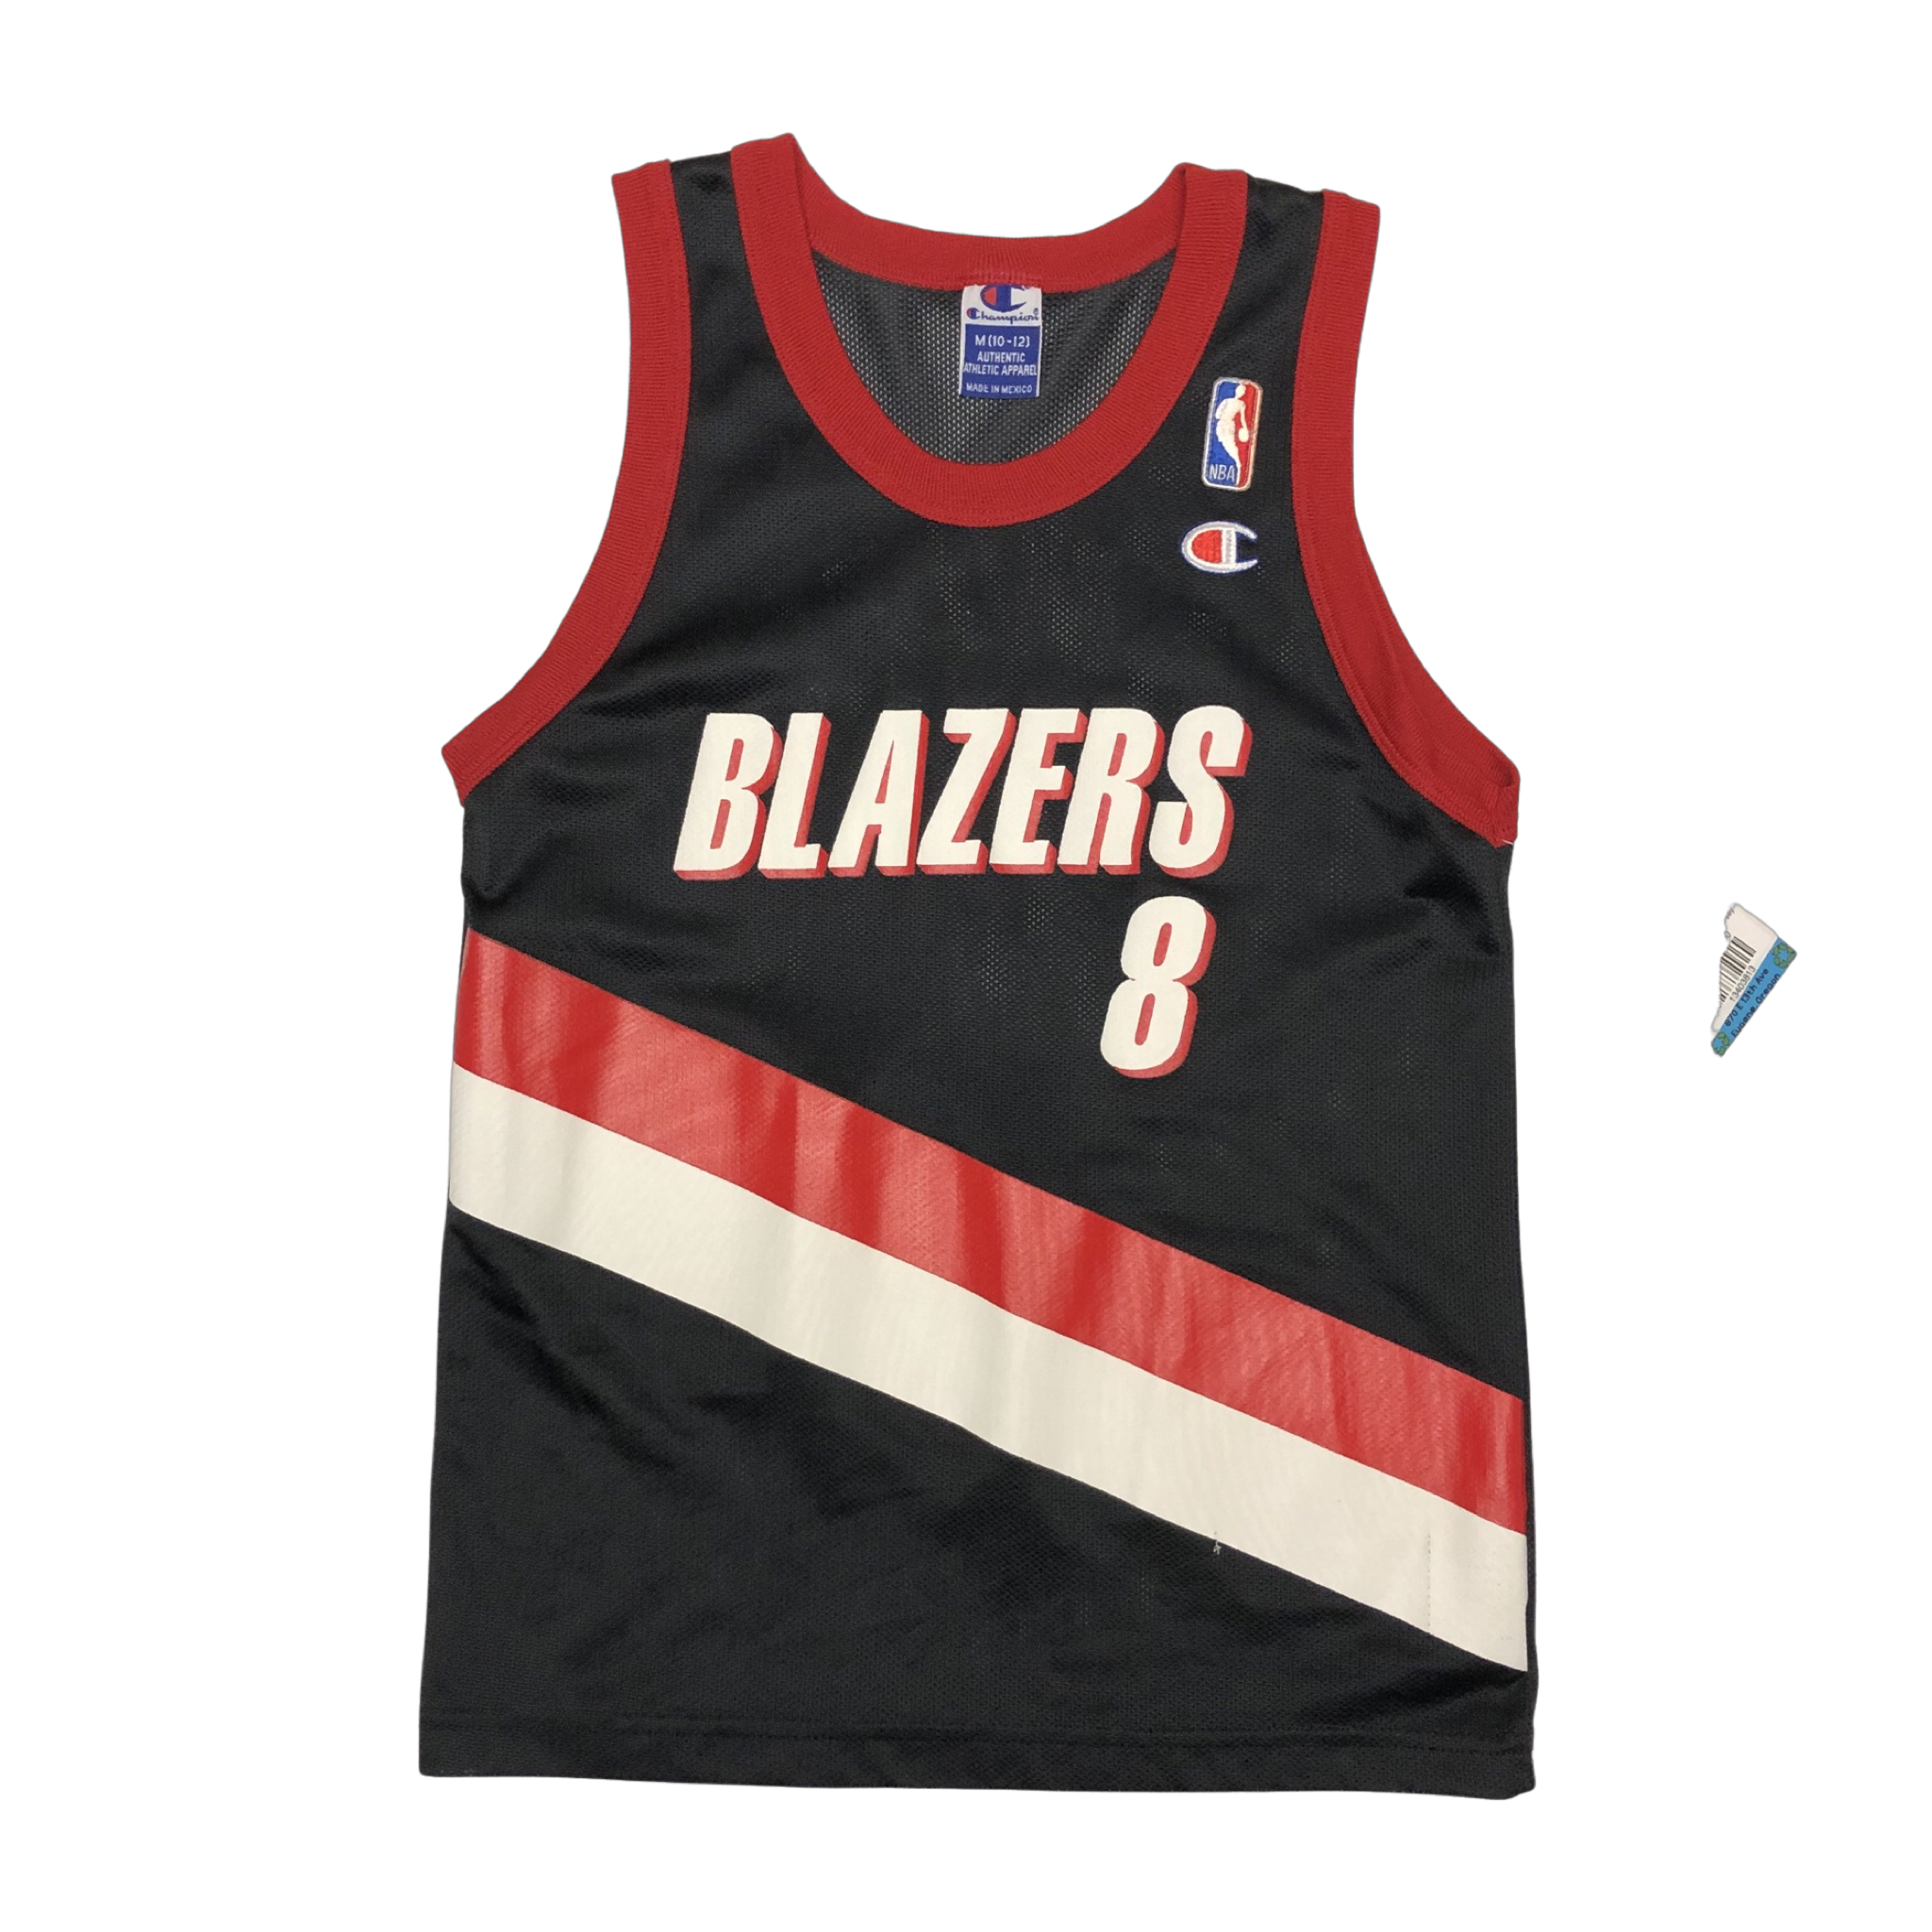 Portland Trail Blazers Team Shop in NBA Fan Shop